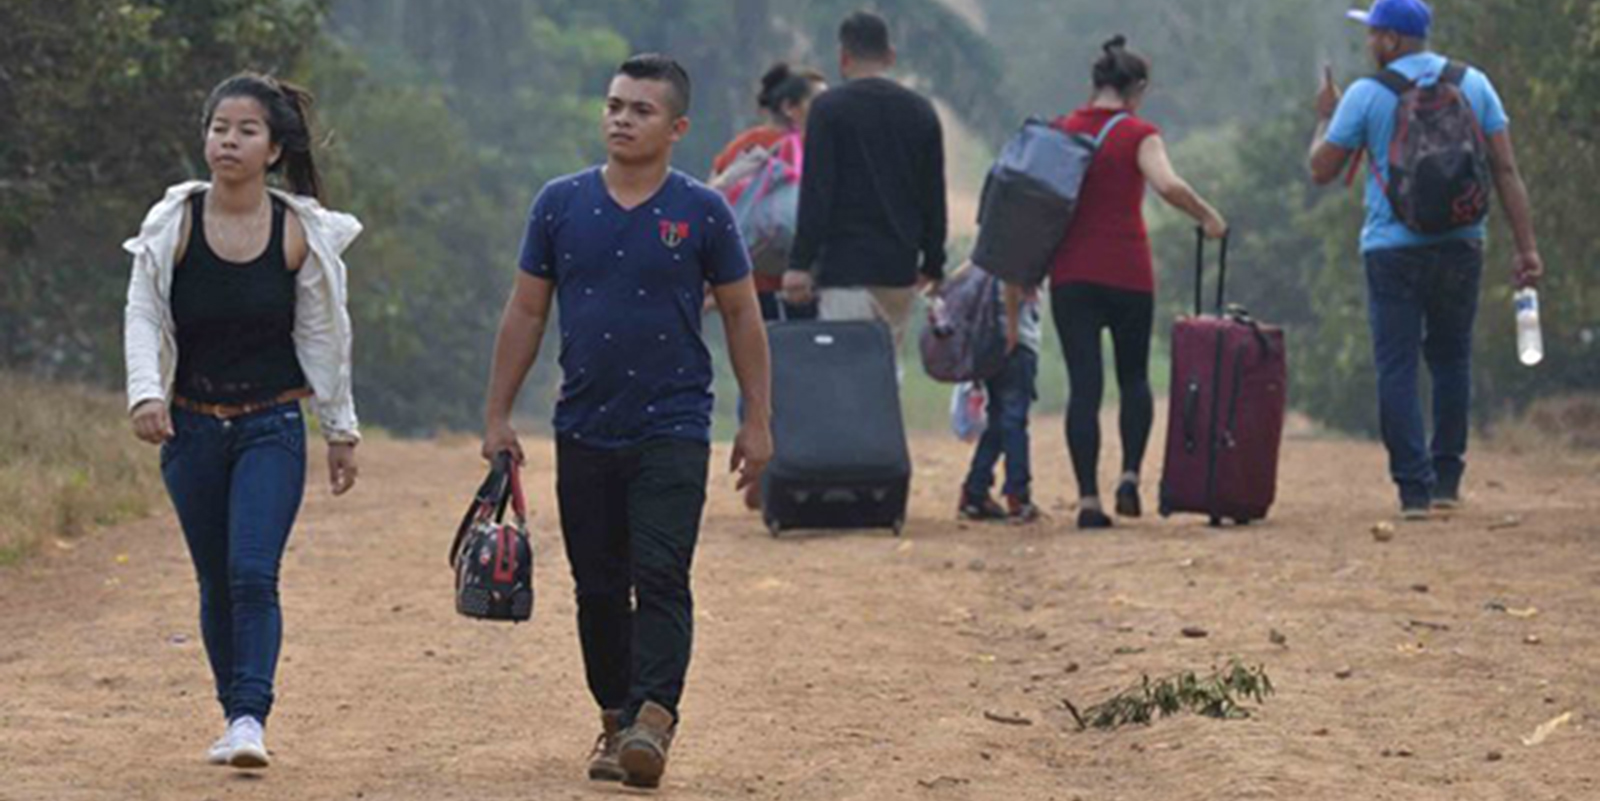 Aunque no hay cifras exactas se cree que varios nicaragüenses en ruta a Estados Unidos también han desaparecido, como otros centroamericanos.